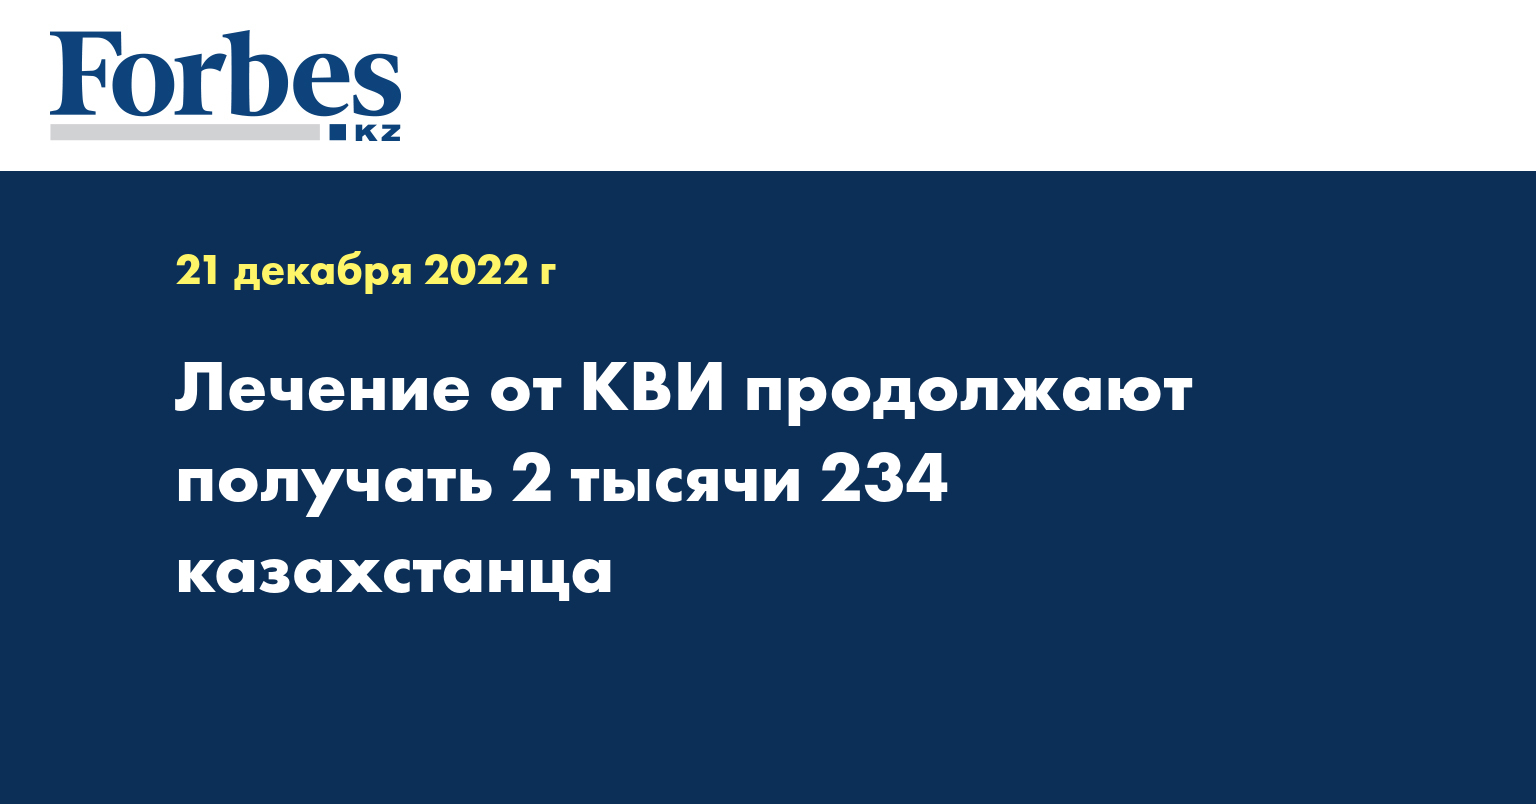 Лечение от КВИ продолжают получать 2 тысячи 234 казахстанца